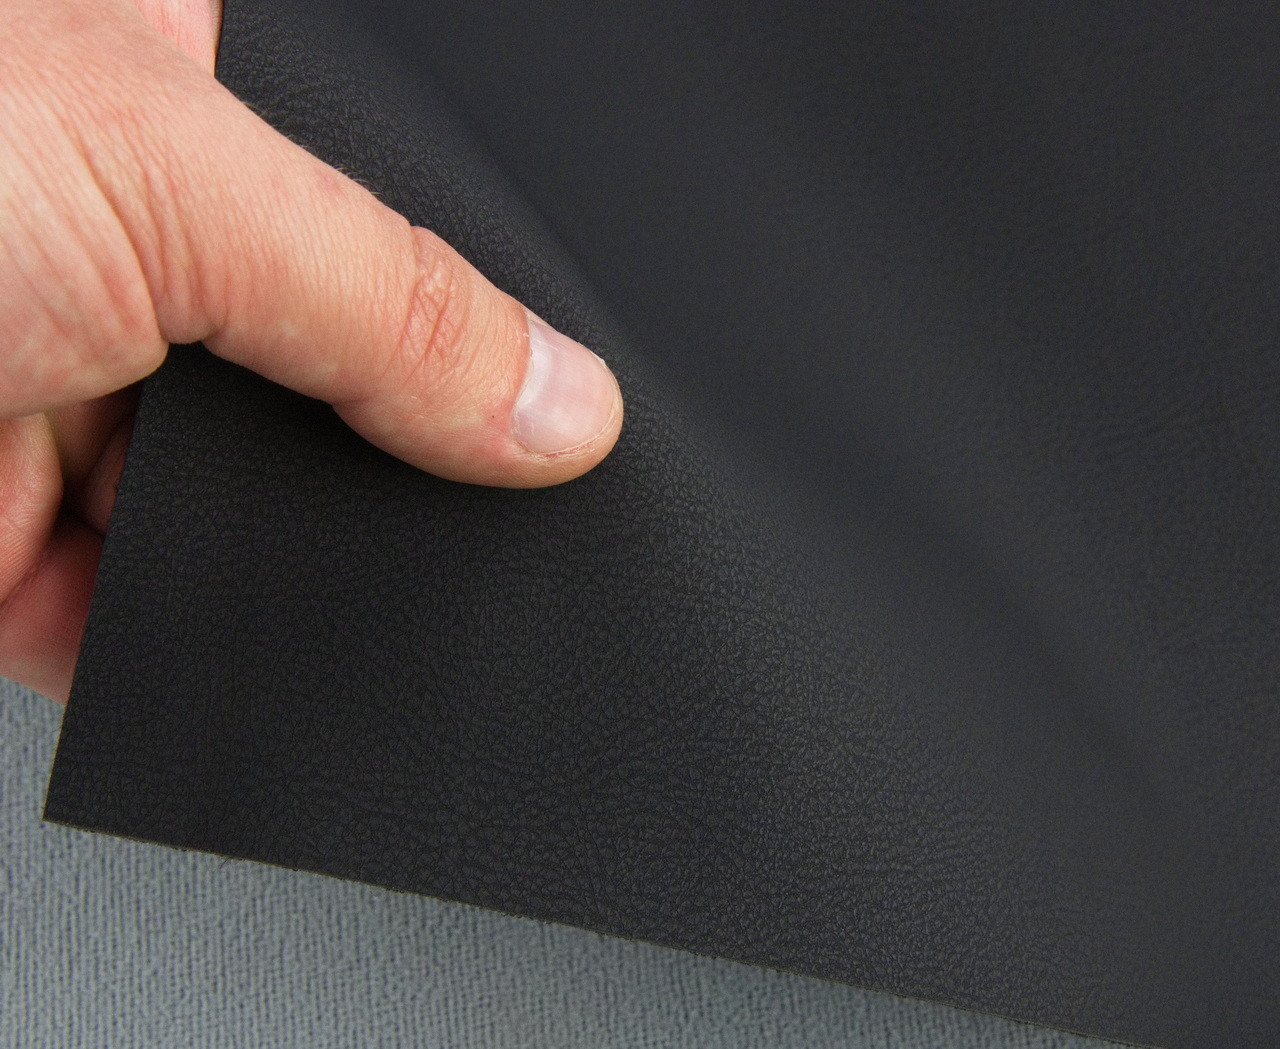 Биеластик тягучий черный матовый Elista-01 для перетяжки дверных карт, стоек, airbag и вставок, ширина 145 см детальная фотка